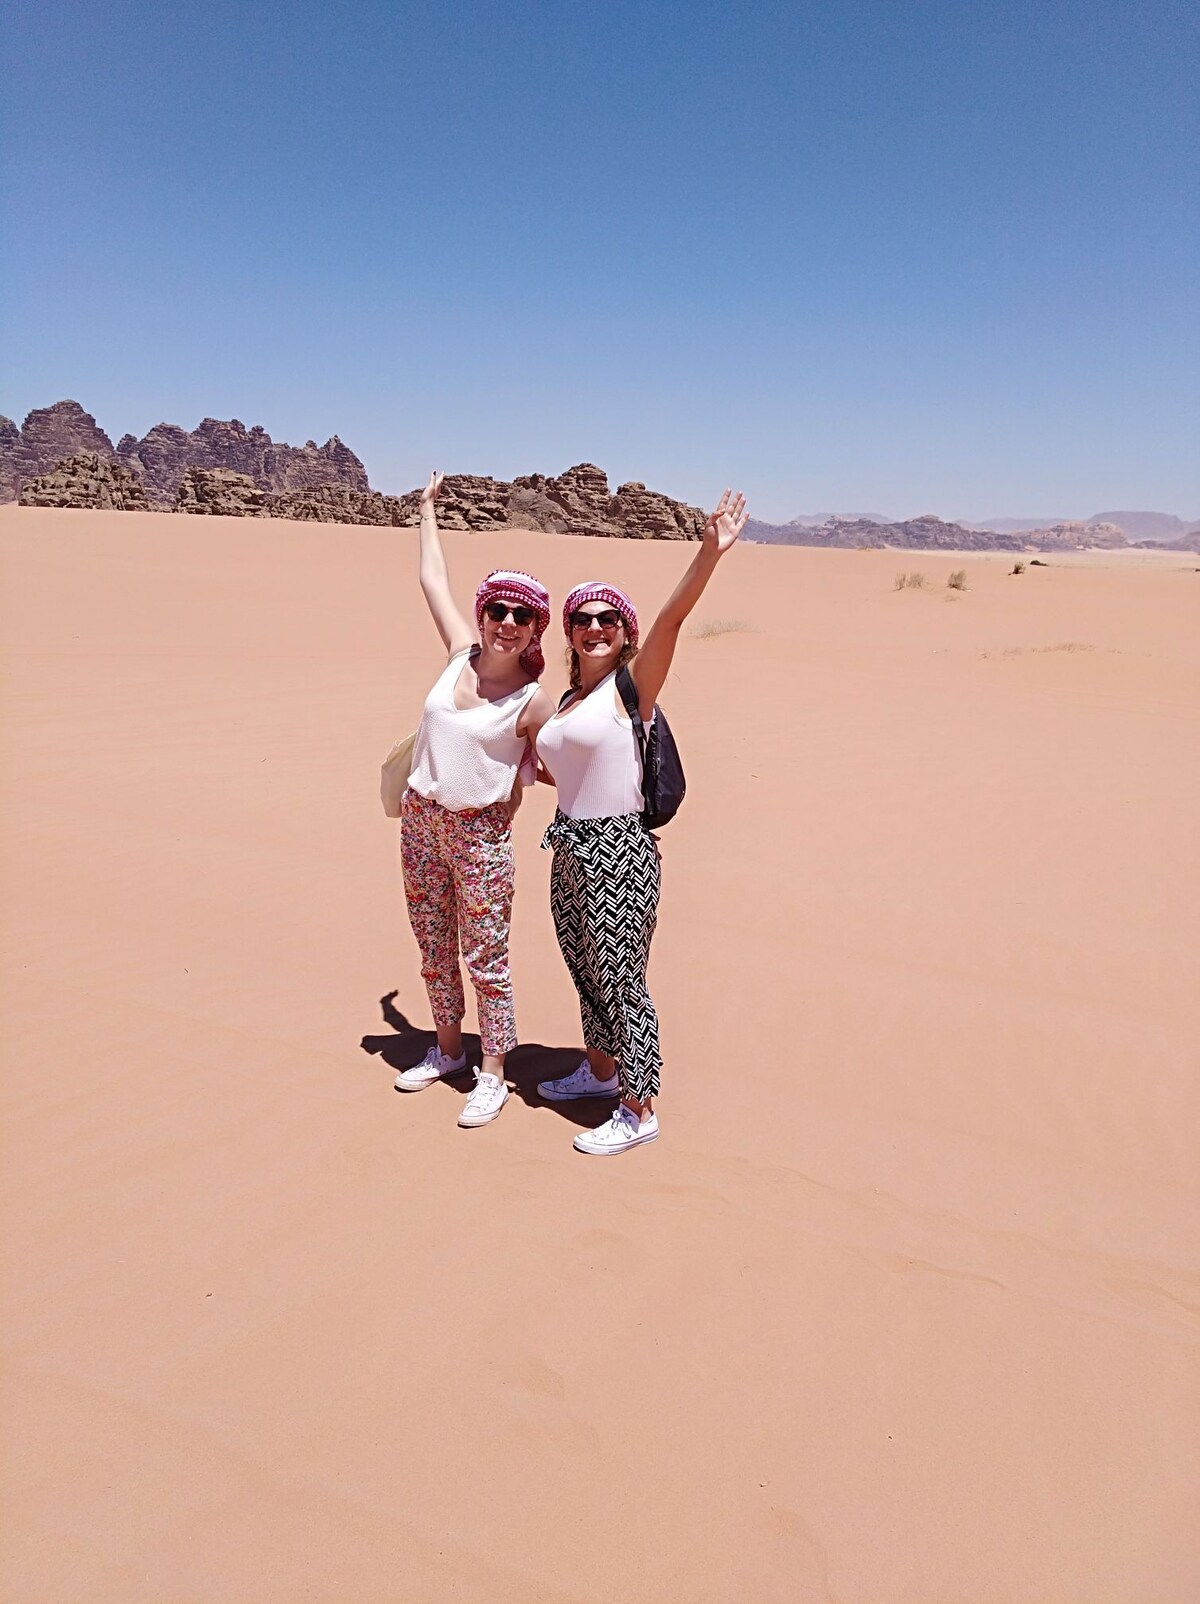 Trekking and outdoor camping in Wadi rum desert